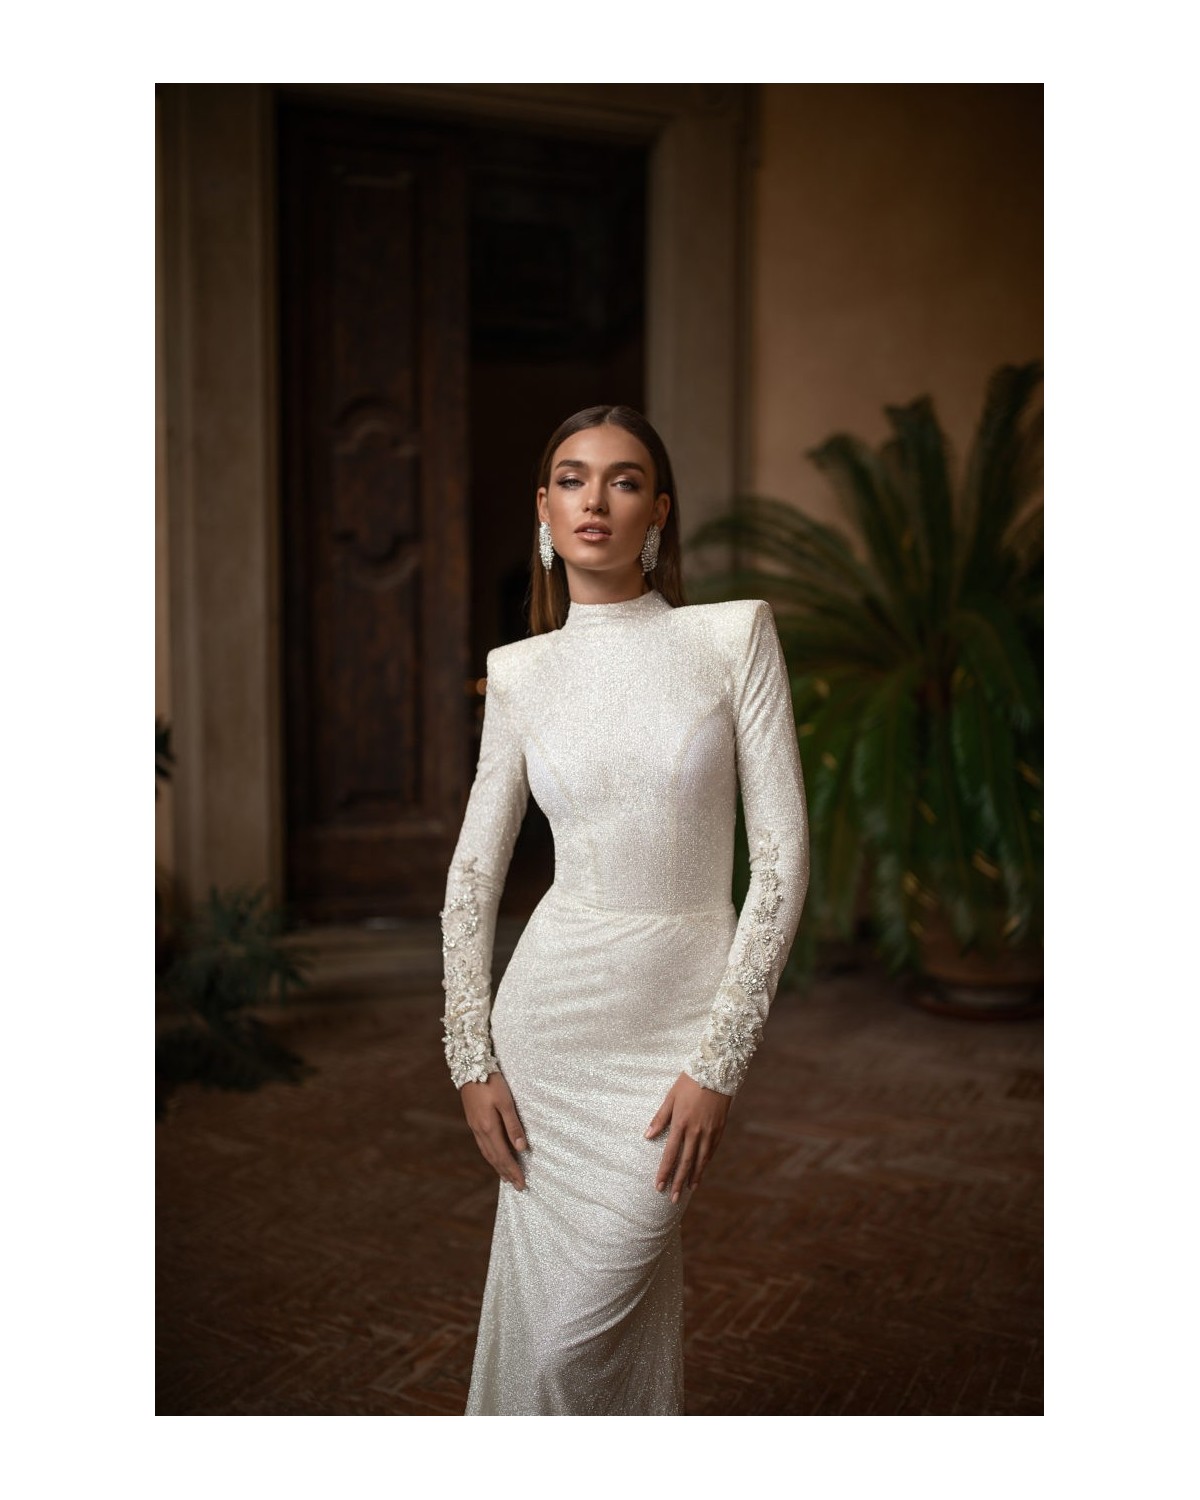 Letizia - abito da sposa collezione 2020 - Millanova